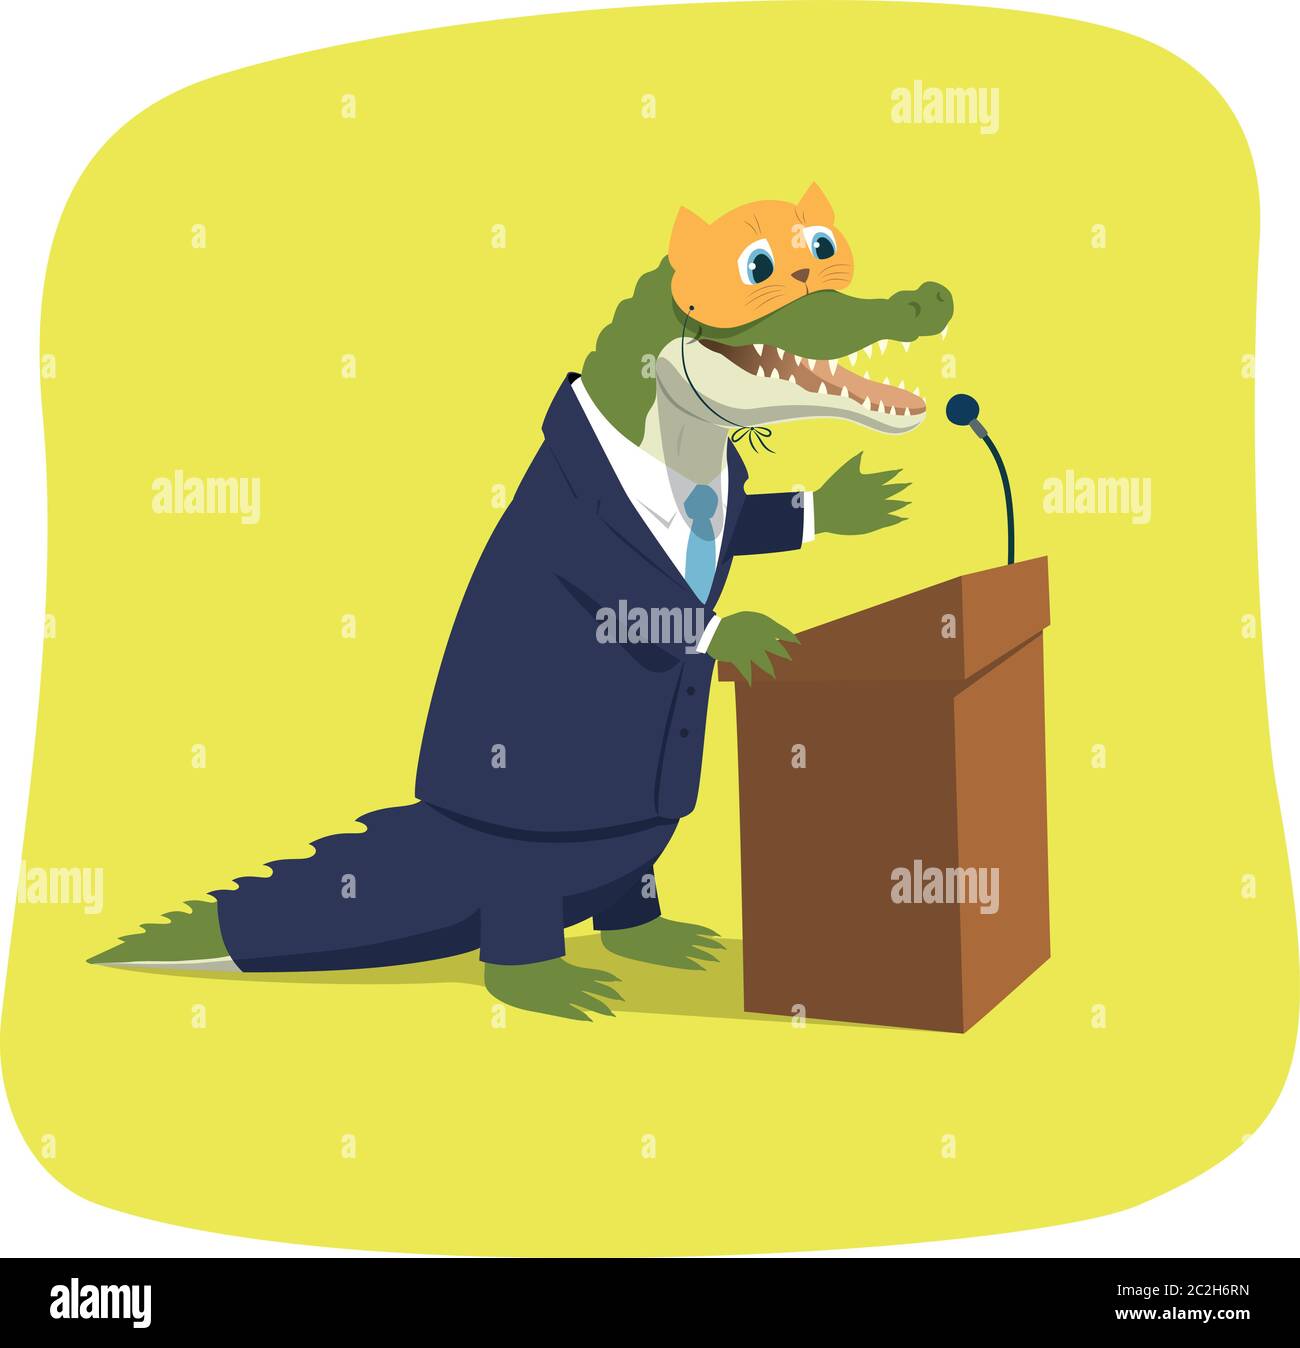 Illustration vectorielle d'un crocodile prétendant un joli chaton tout en pronontant un discours à une tribune. Caricature politique. Le masque se trouve sur un calque distinct. Illustration de Vecteur